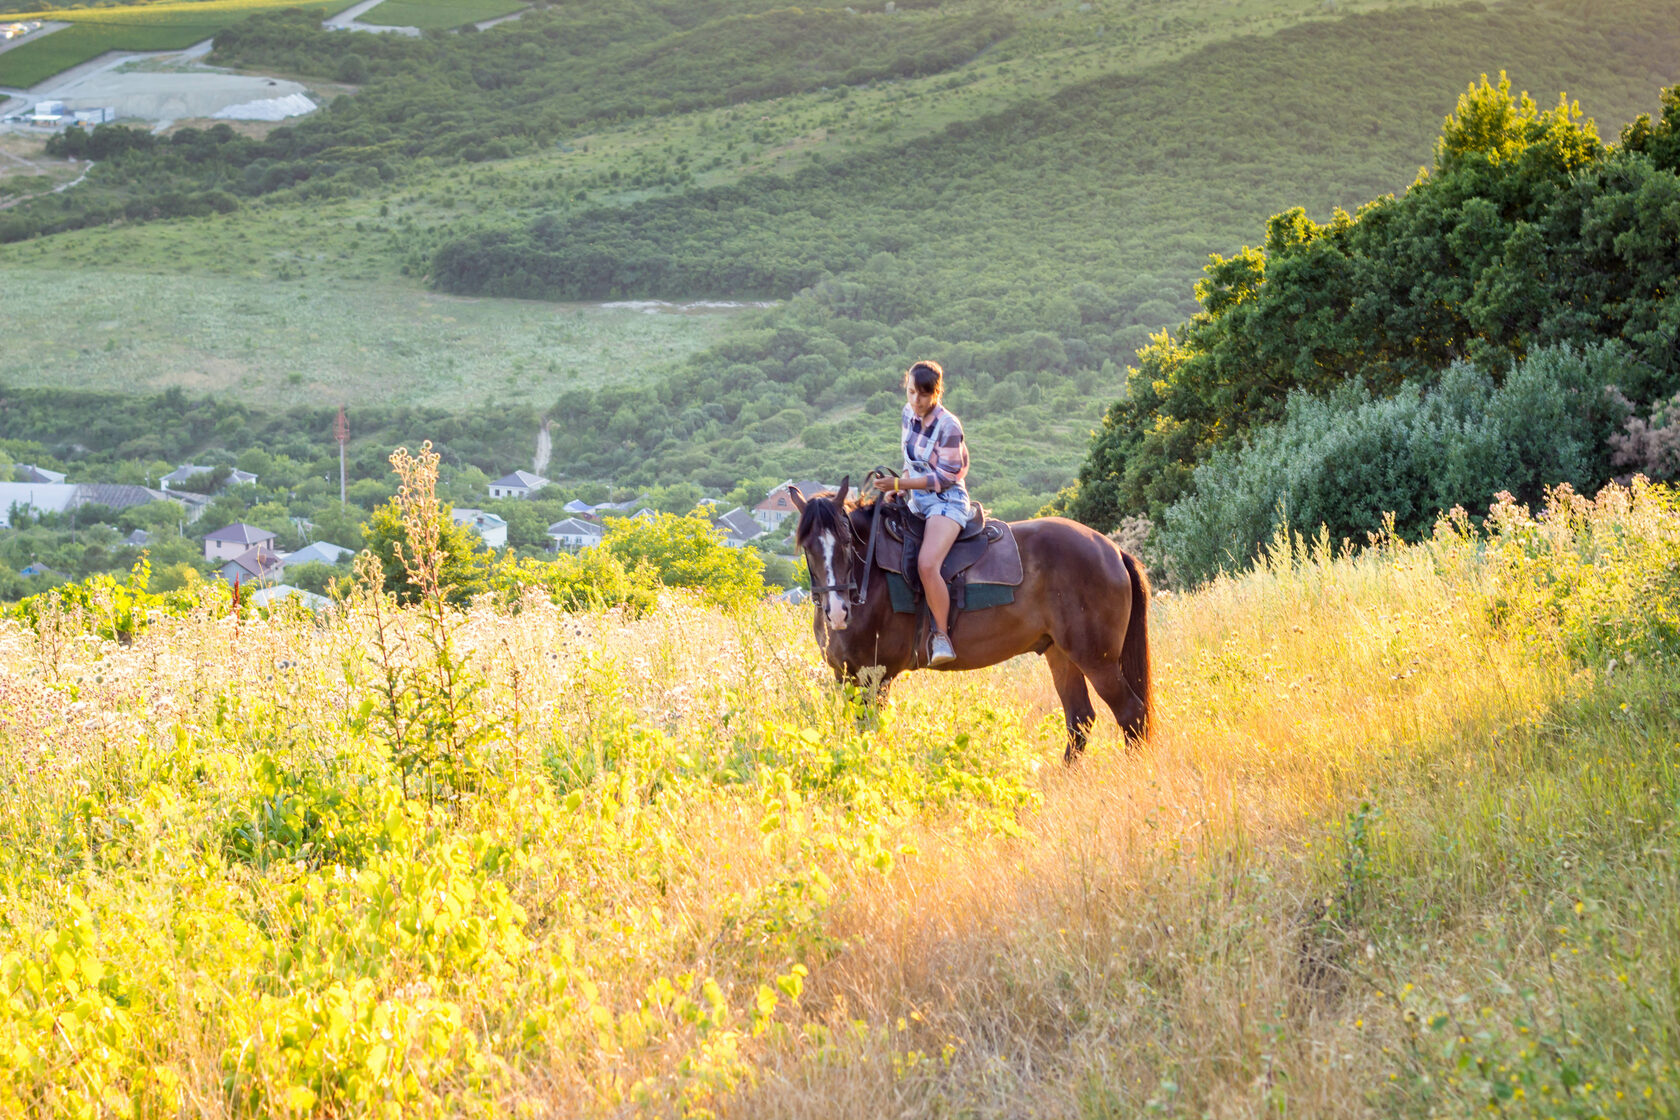 конные прогулки в предгорьях Кавказа, конные прогулки в Анапе, забронировать прогулку, конные прогулки для всей семьи, покататься на лошадях в Анапе, верховая езда в Анапе, отдых в Анапе, конный прокат в Анапе